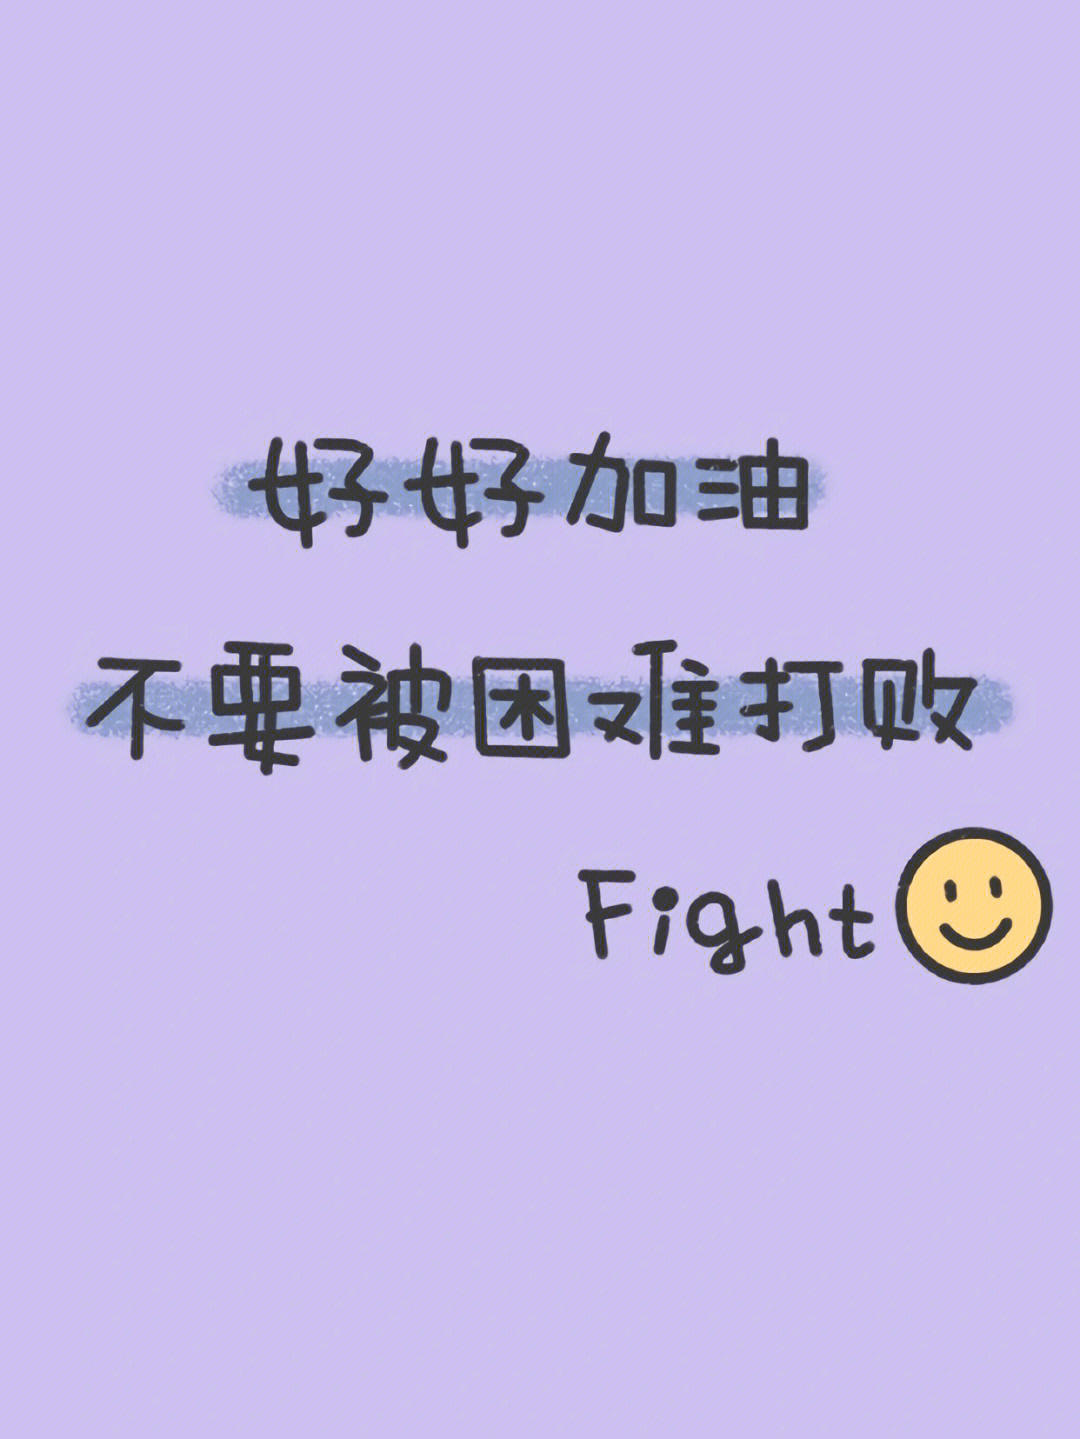 fighting壁纸图片